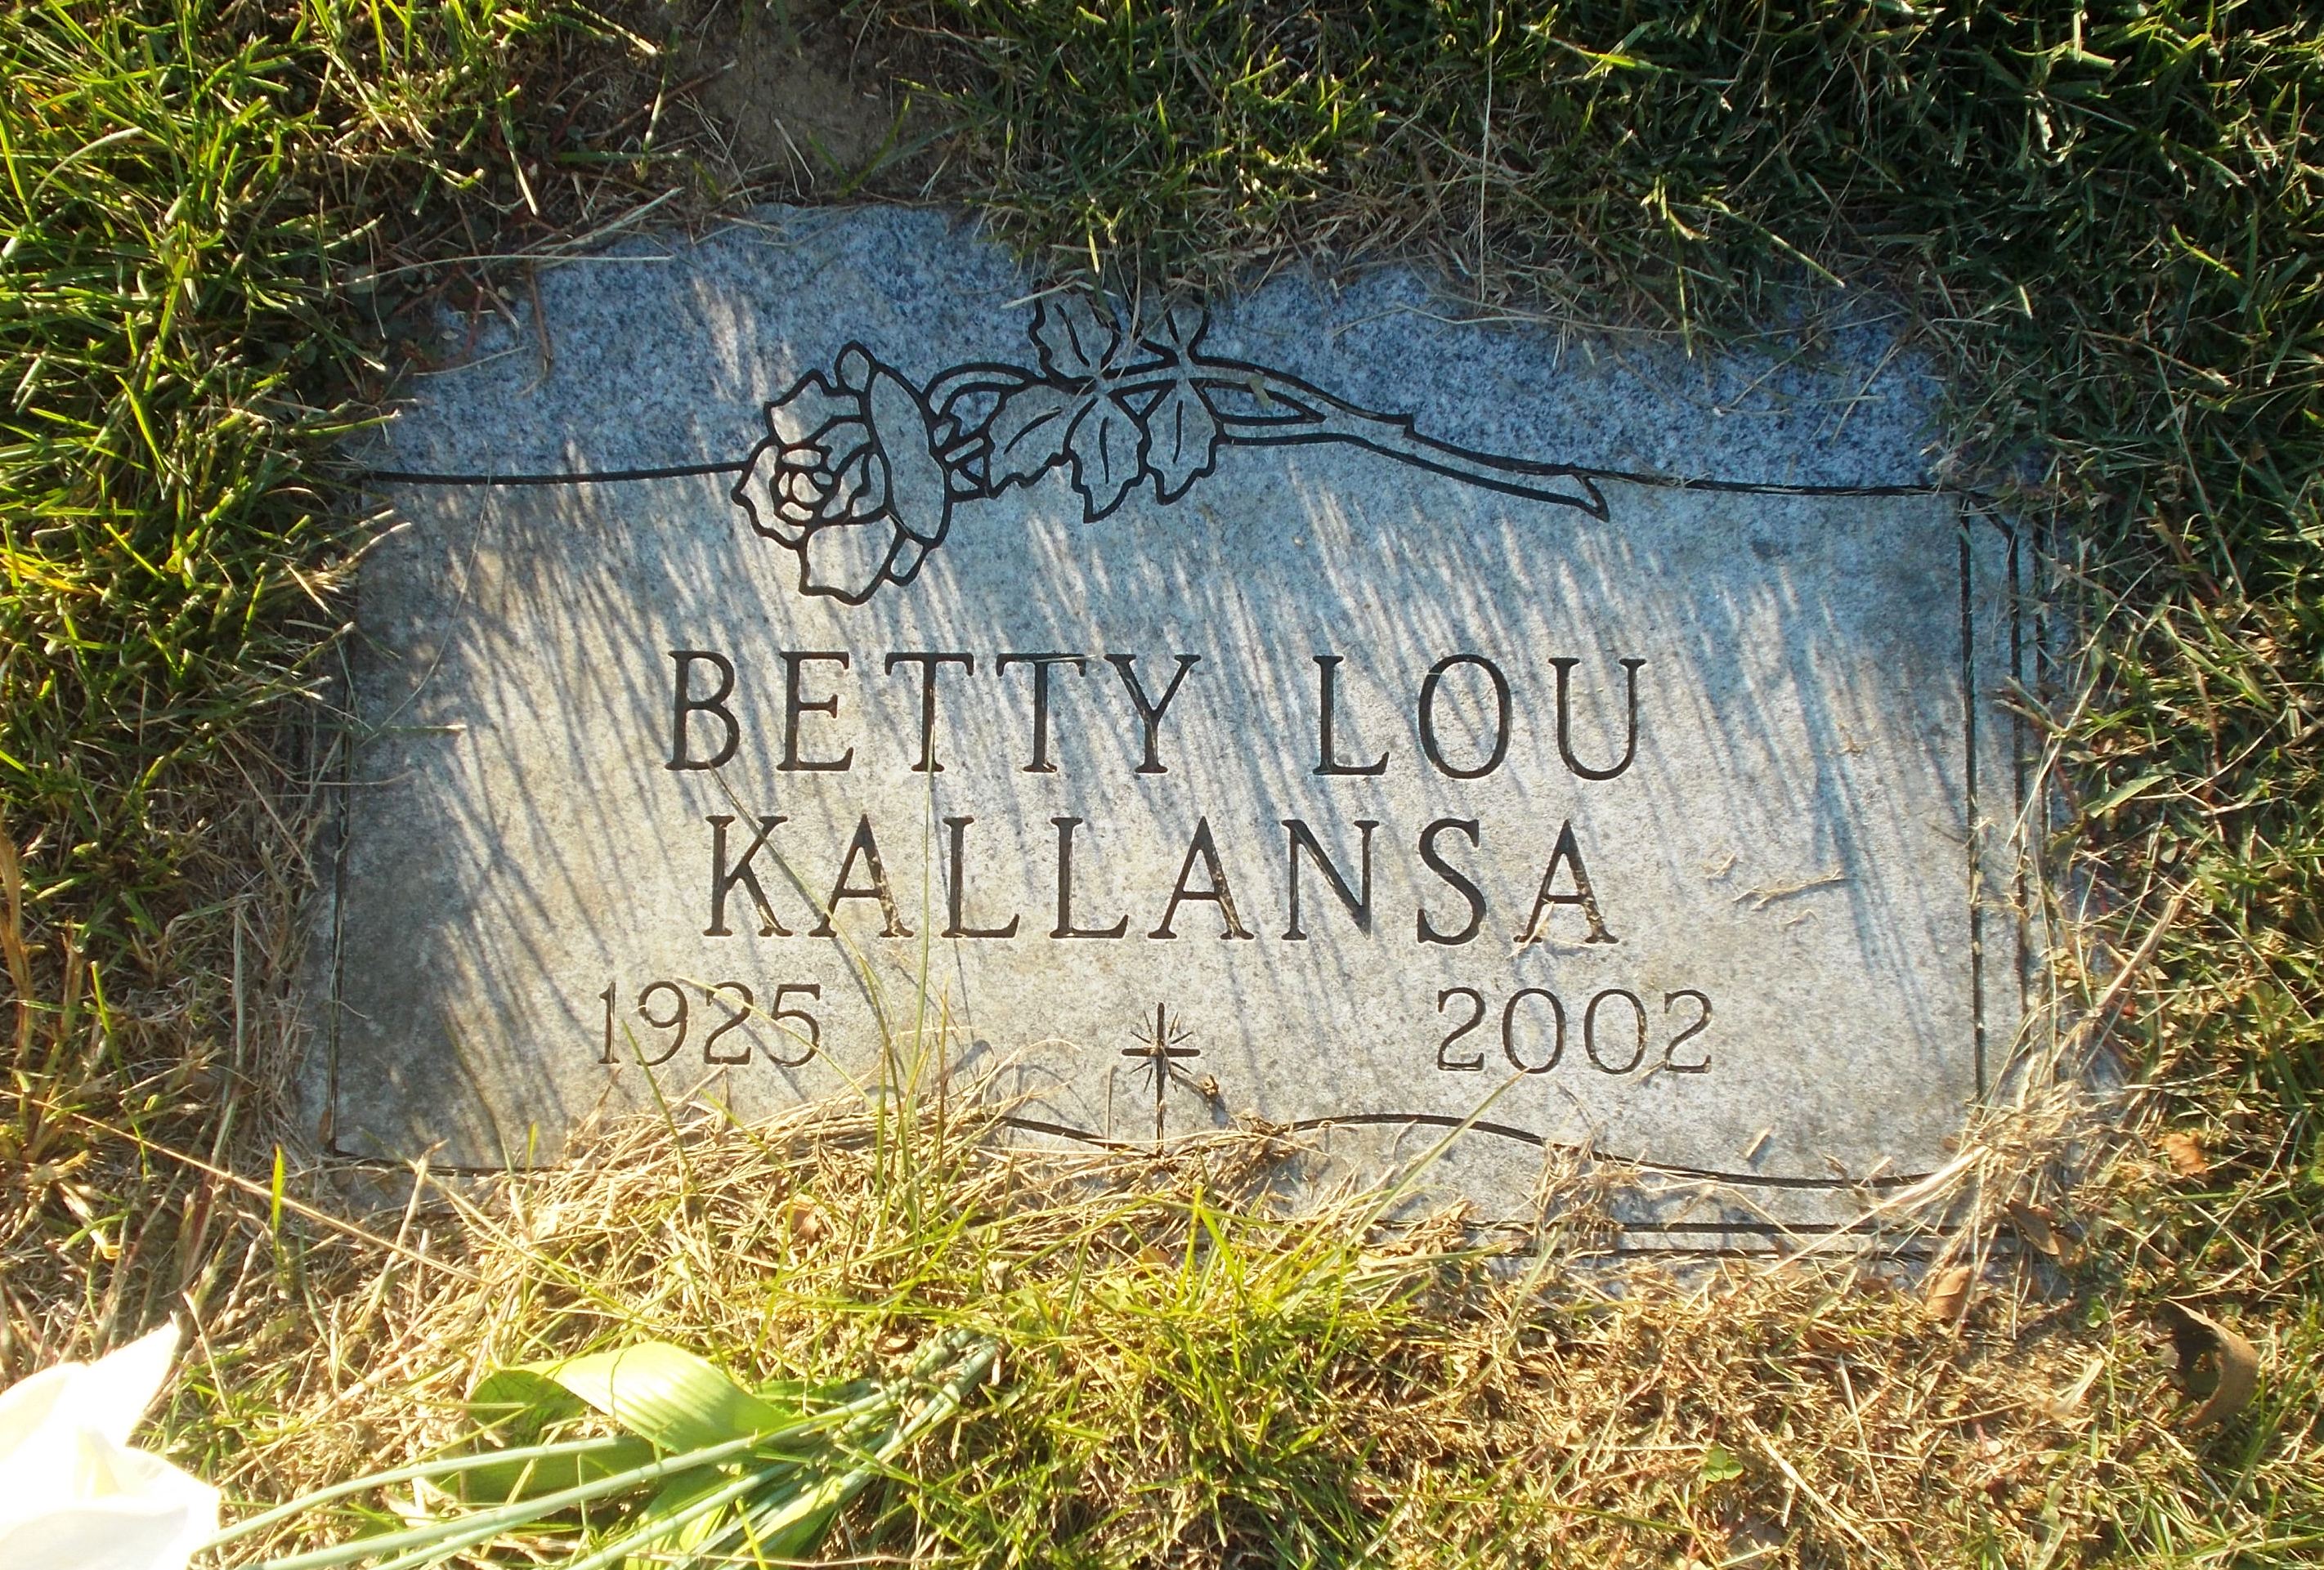 Betty Lou Kallansa